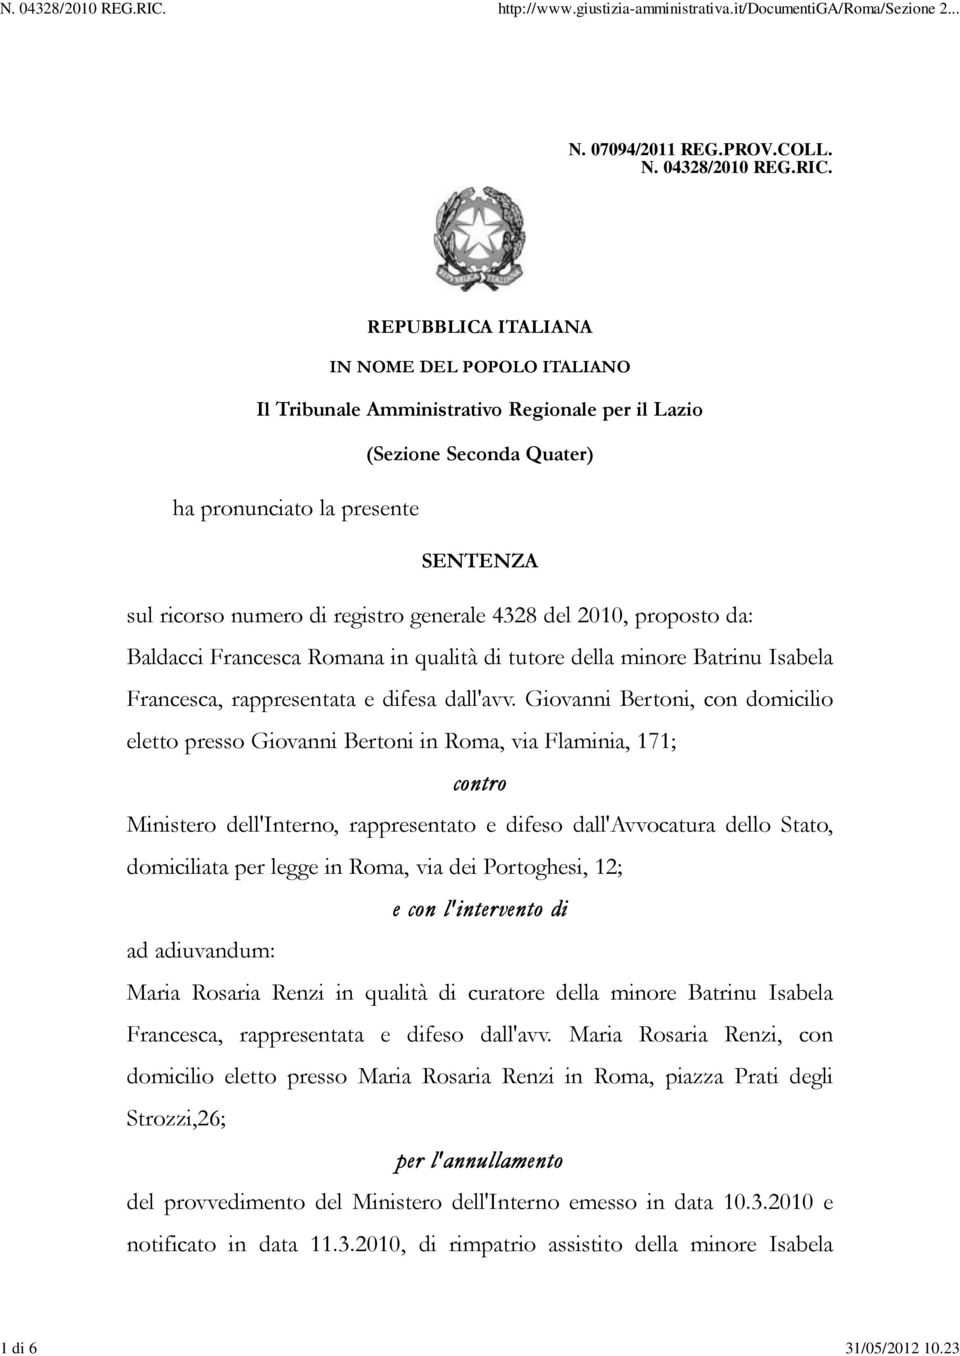 4328 del 2010, proposto da: Baldacci Francesca Romana in qualità di tutore della minore Batrinu Isabela Francesca, rappresentata e difesa dall'avv.